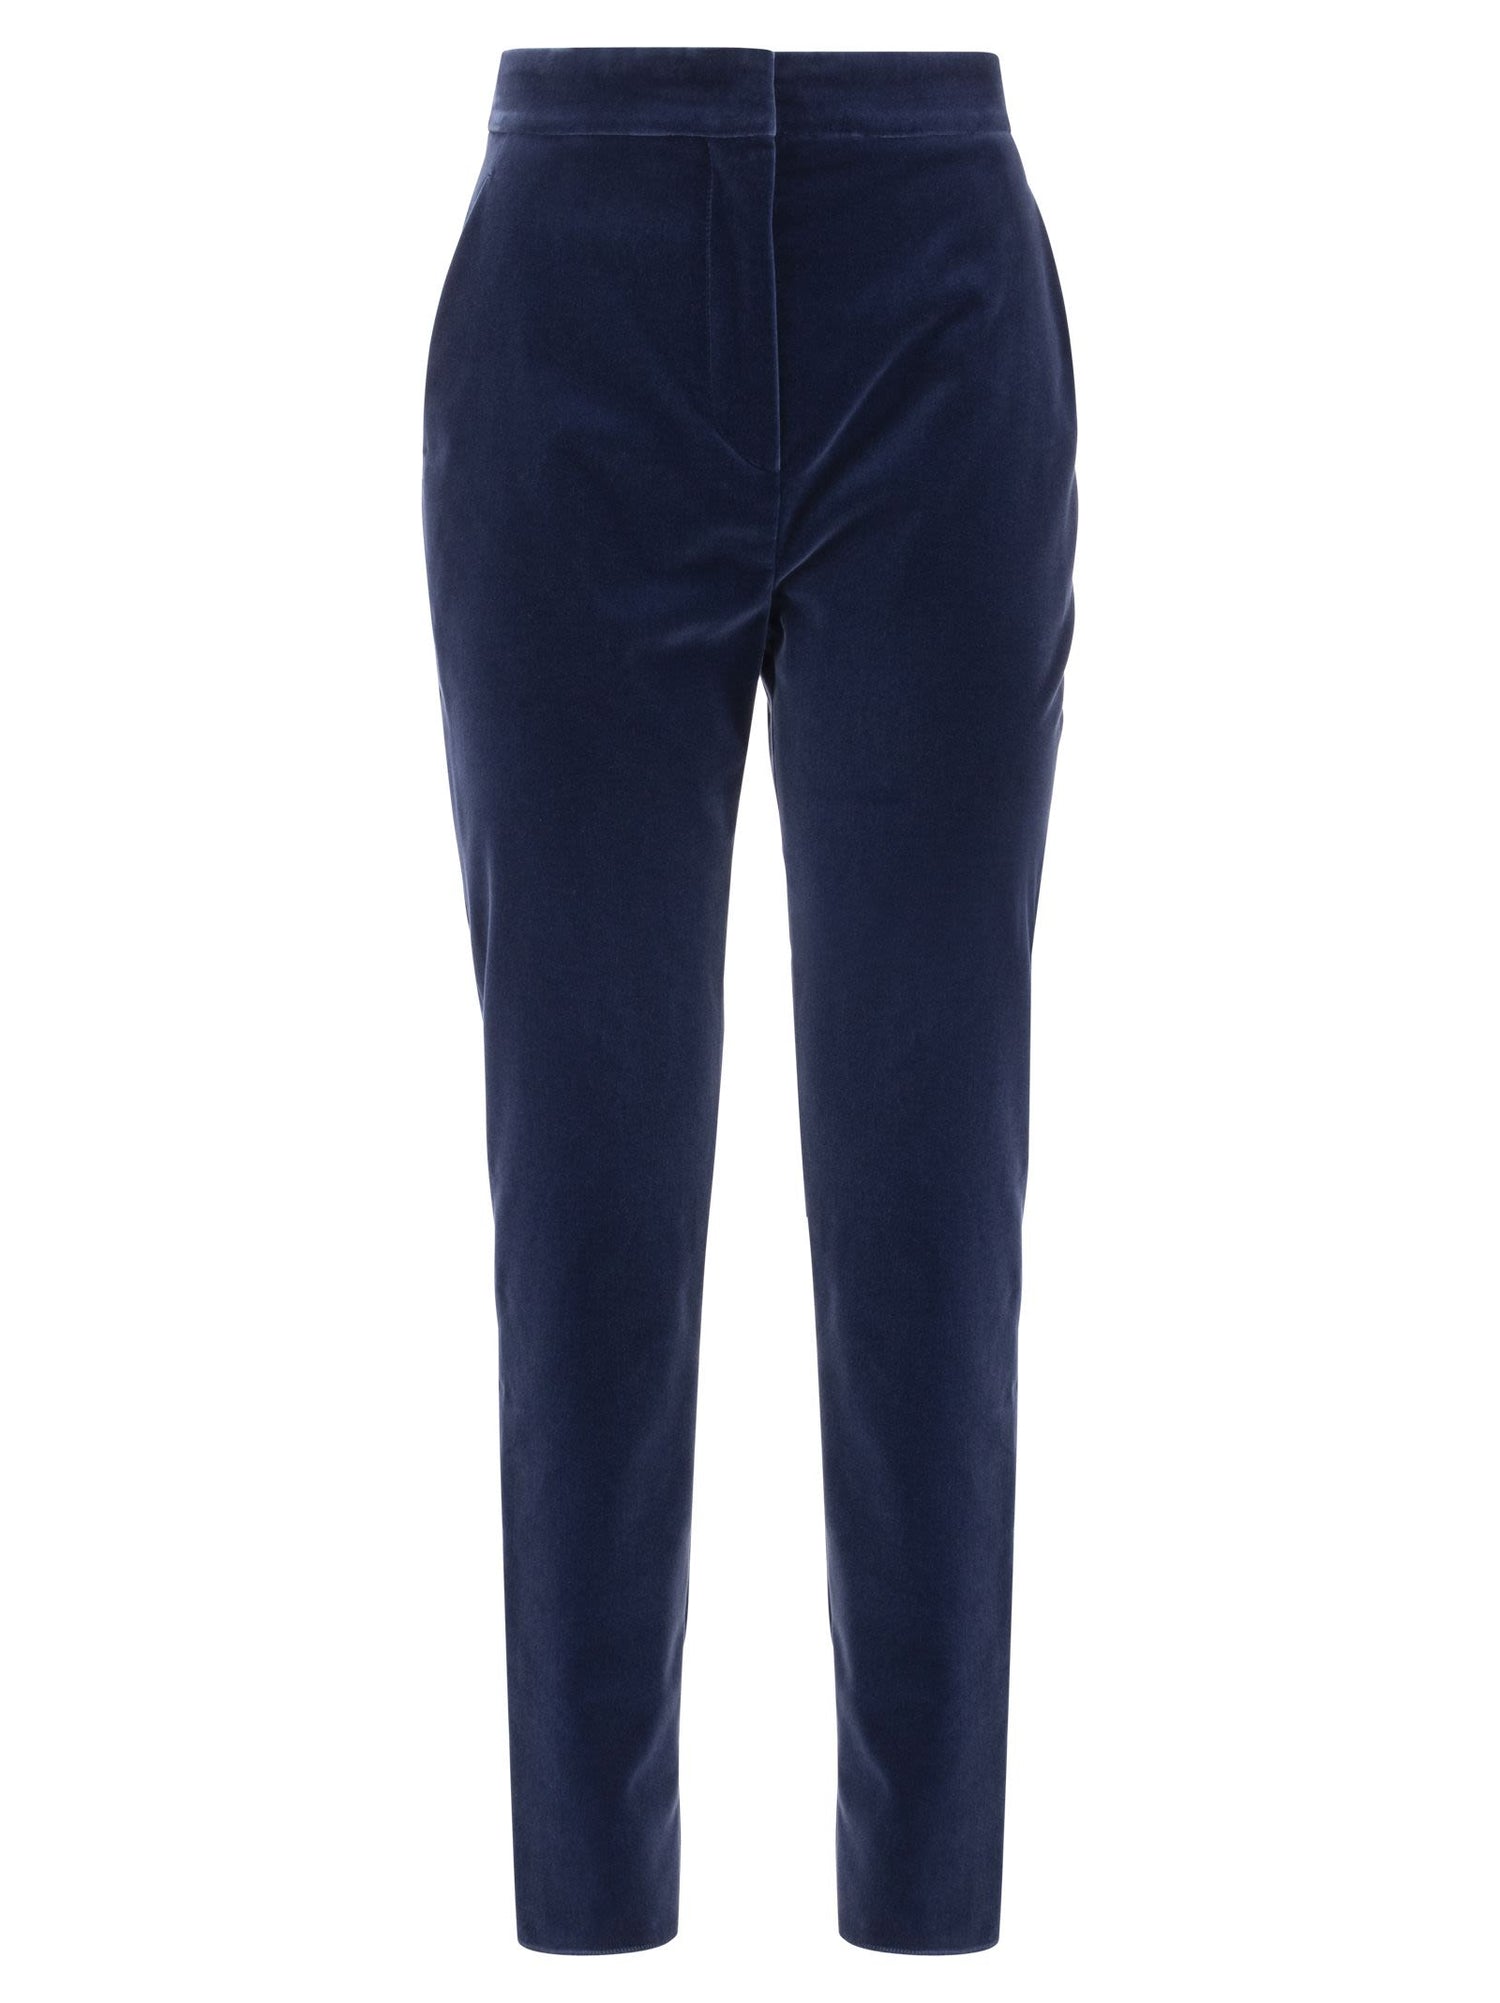 Mens Soft Velvet Trousers Classic Dinner Part Tailored Fit Dress Pants |  eBay